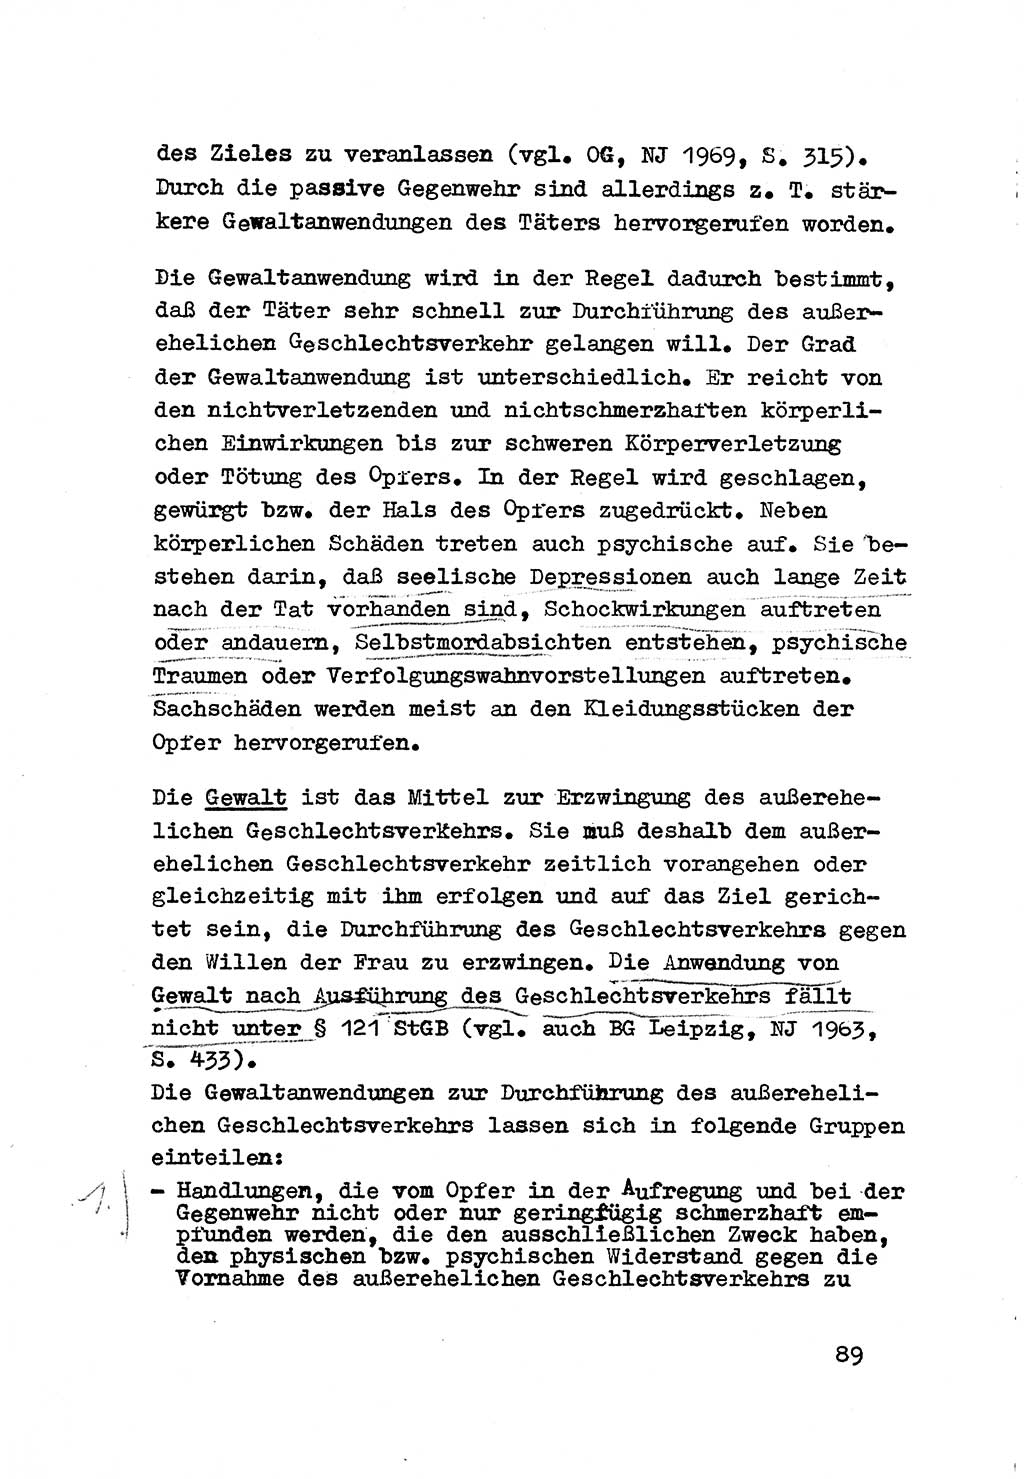 Strafrecht der DDR (Deutsche Demokratische Republik), Besonderer Teil, Lehrmaterial, Heft 3 1969, Seite 89 (Strafr. DDR BT Lehrmat. H. 3 1969, S. 89)